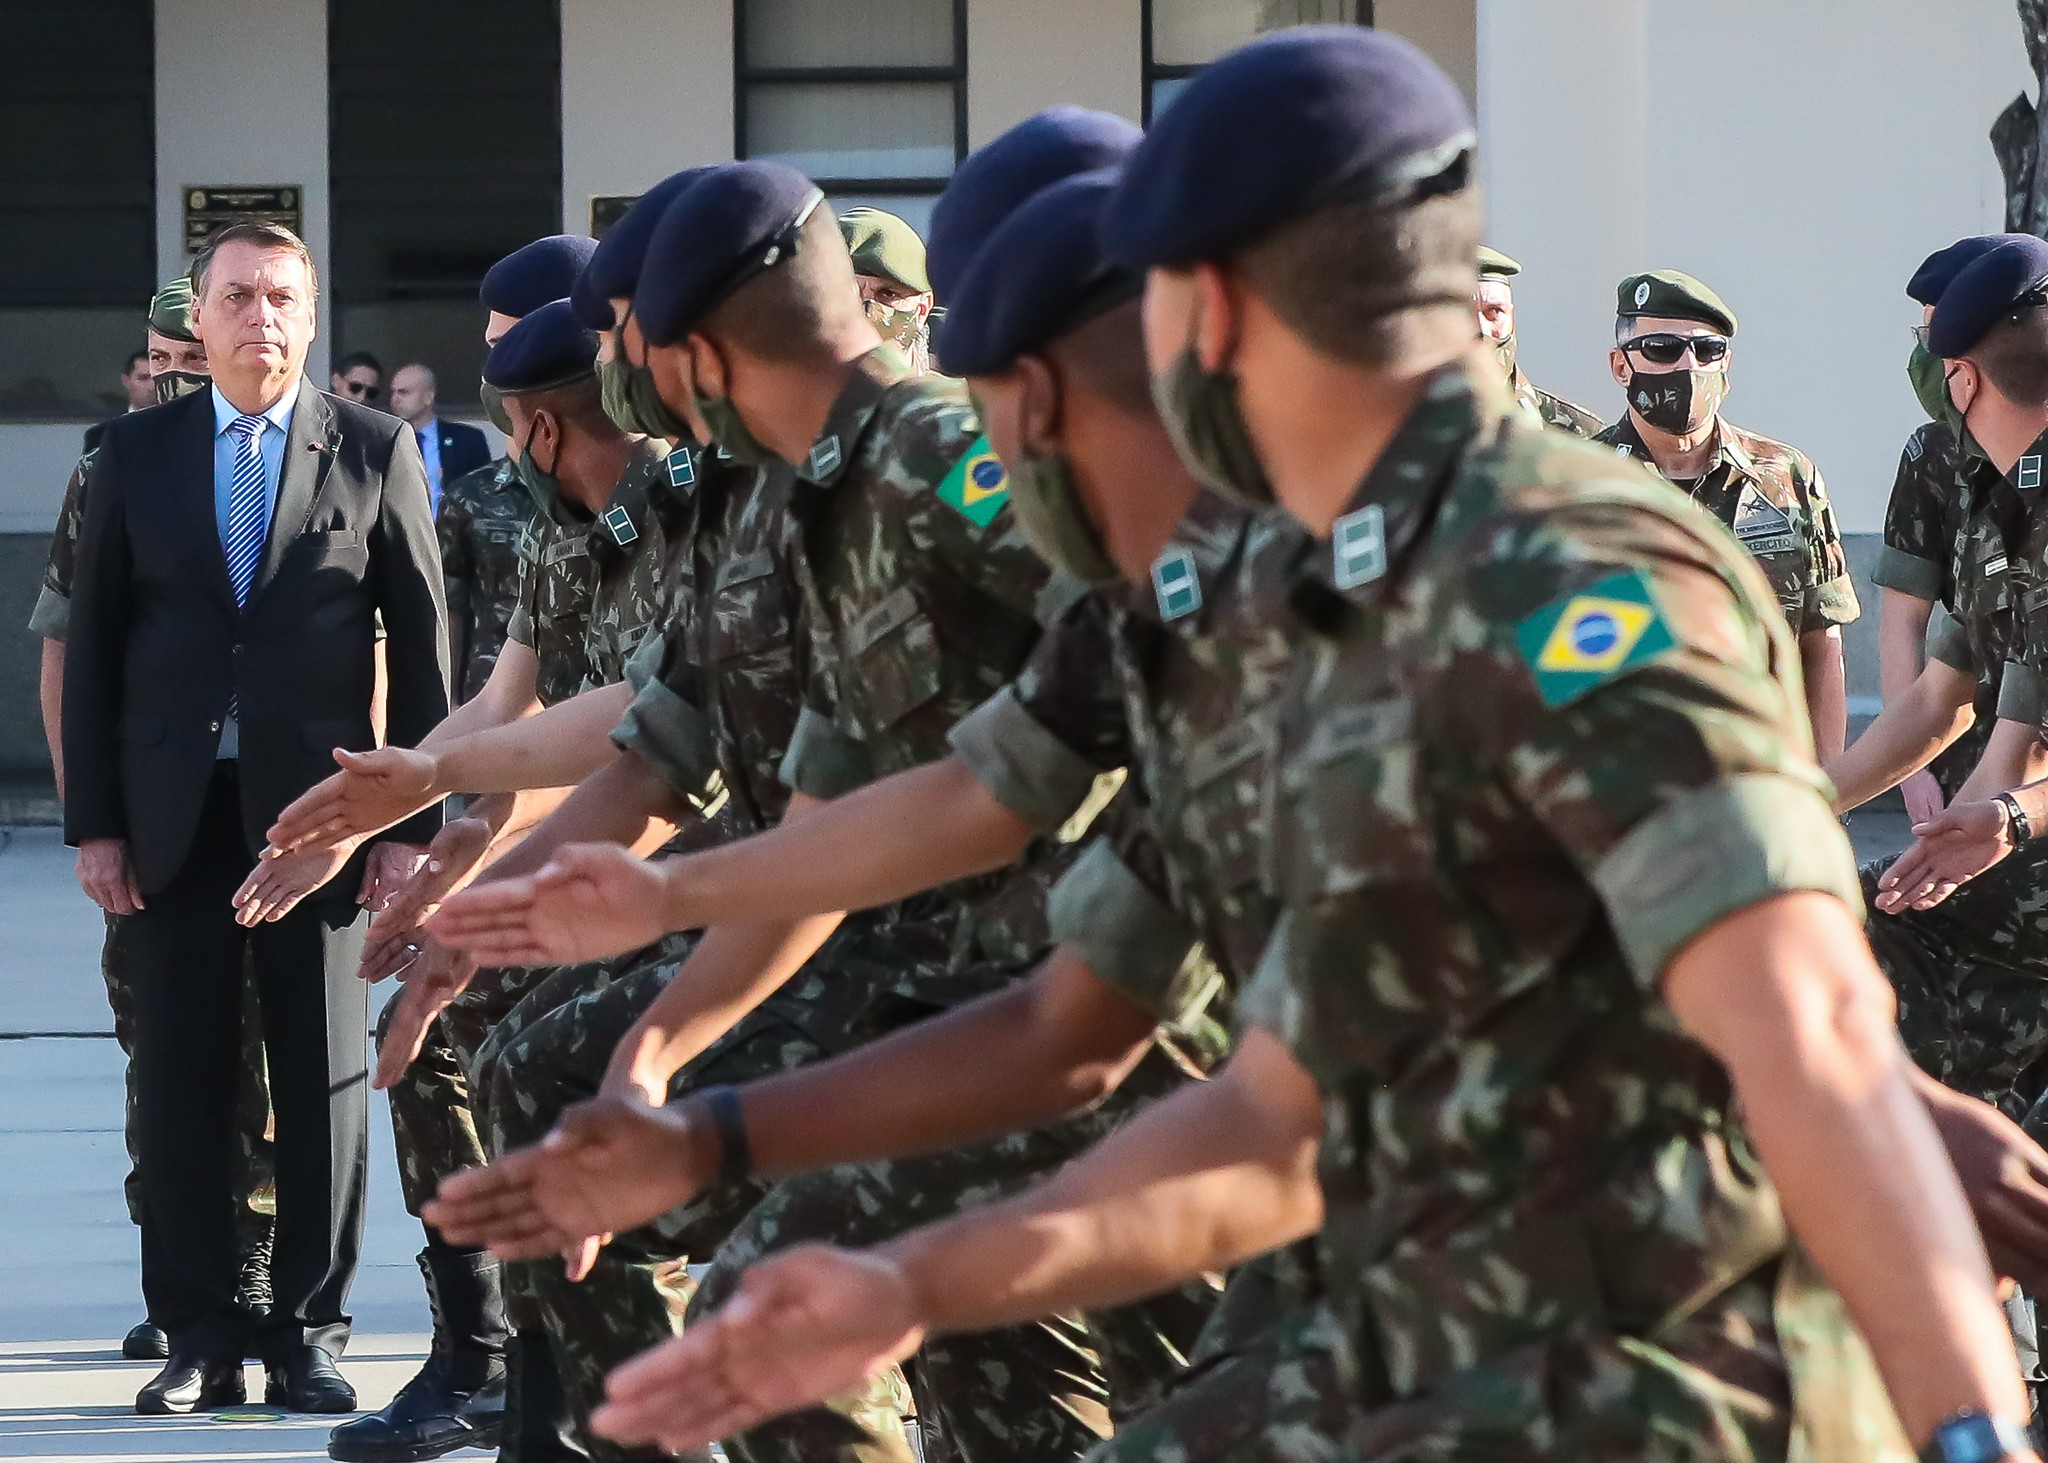 Viagra, penes inflables y más: los polémicos gastos del Ejército de Brasil en la gestión de Bolsonaro